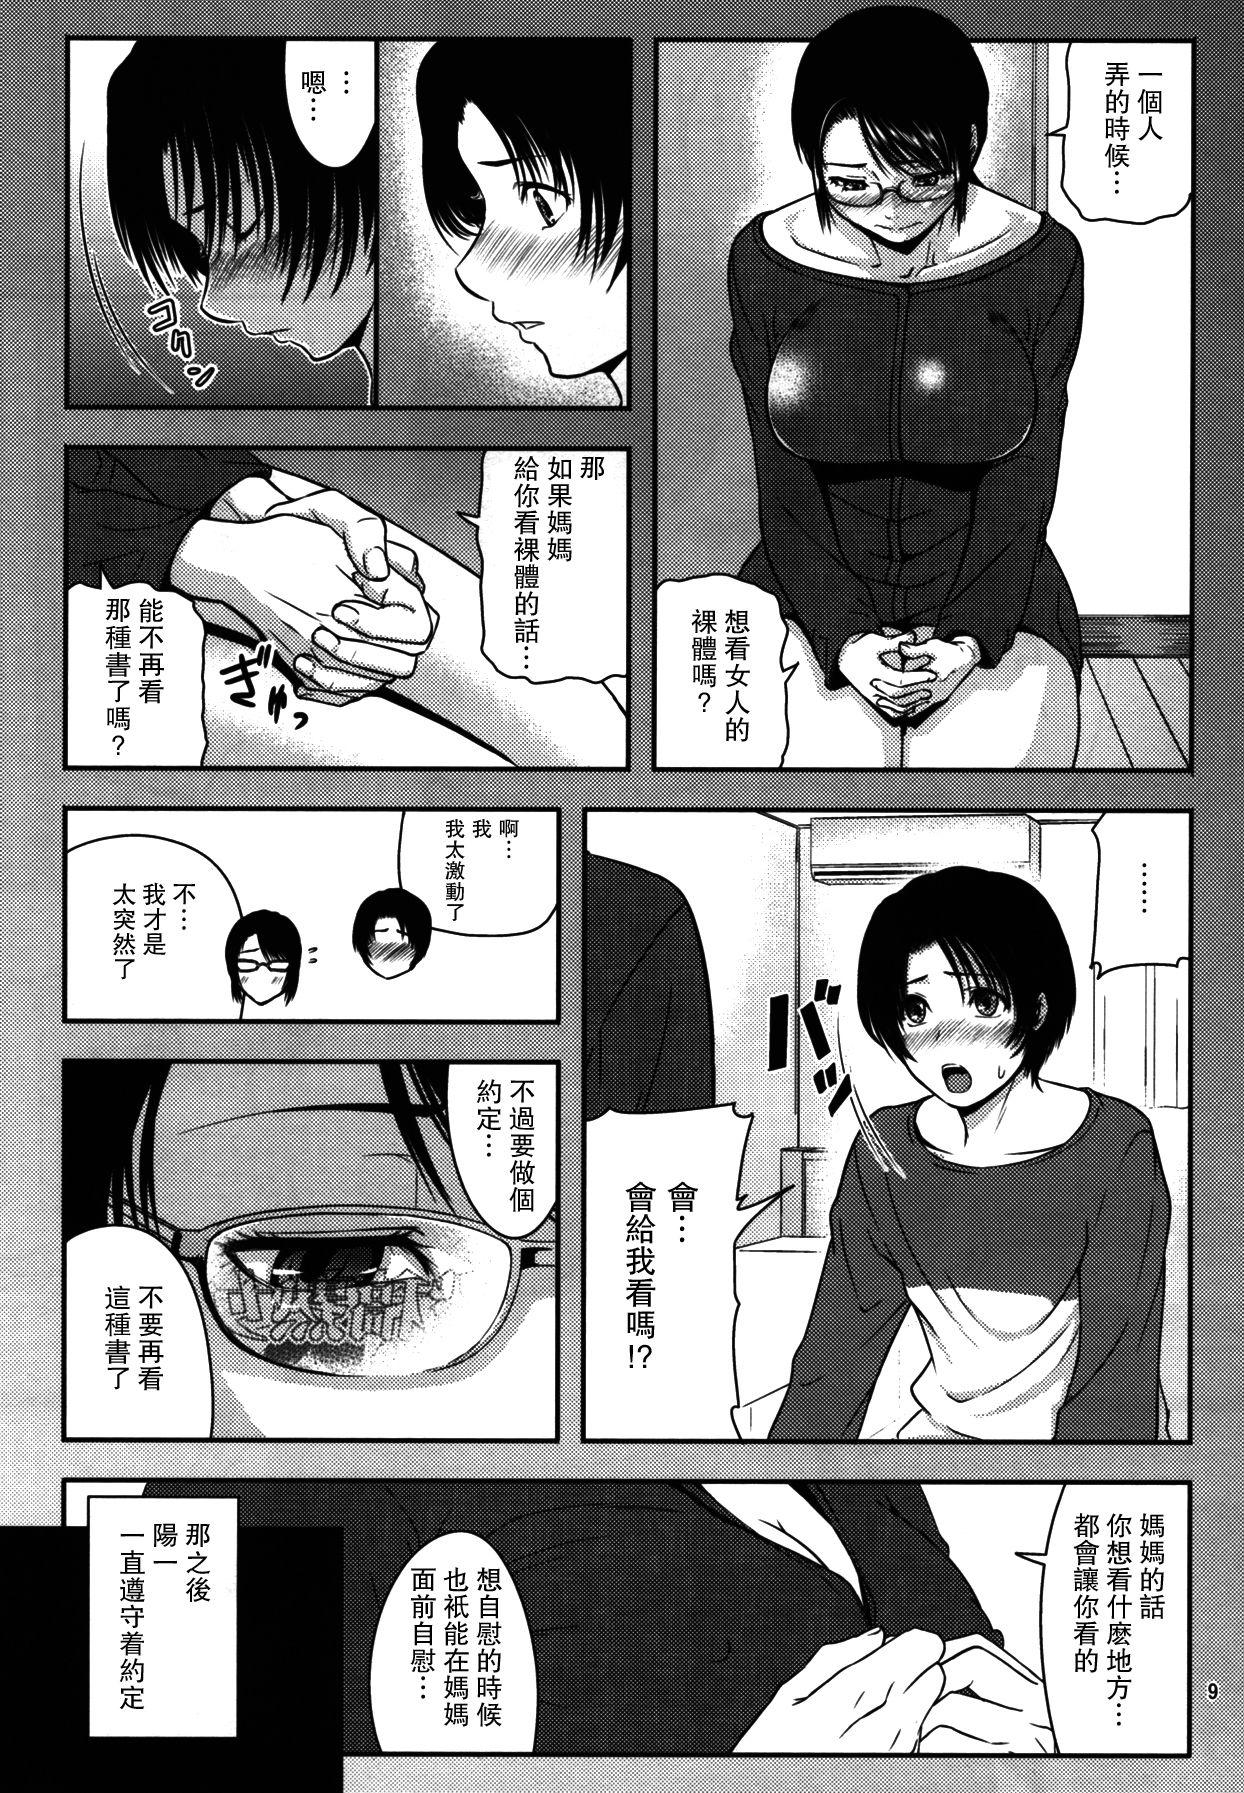 Old Boketsu o Horu 18 - Original Gagging - Page 8